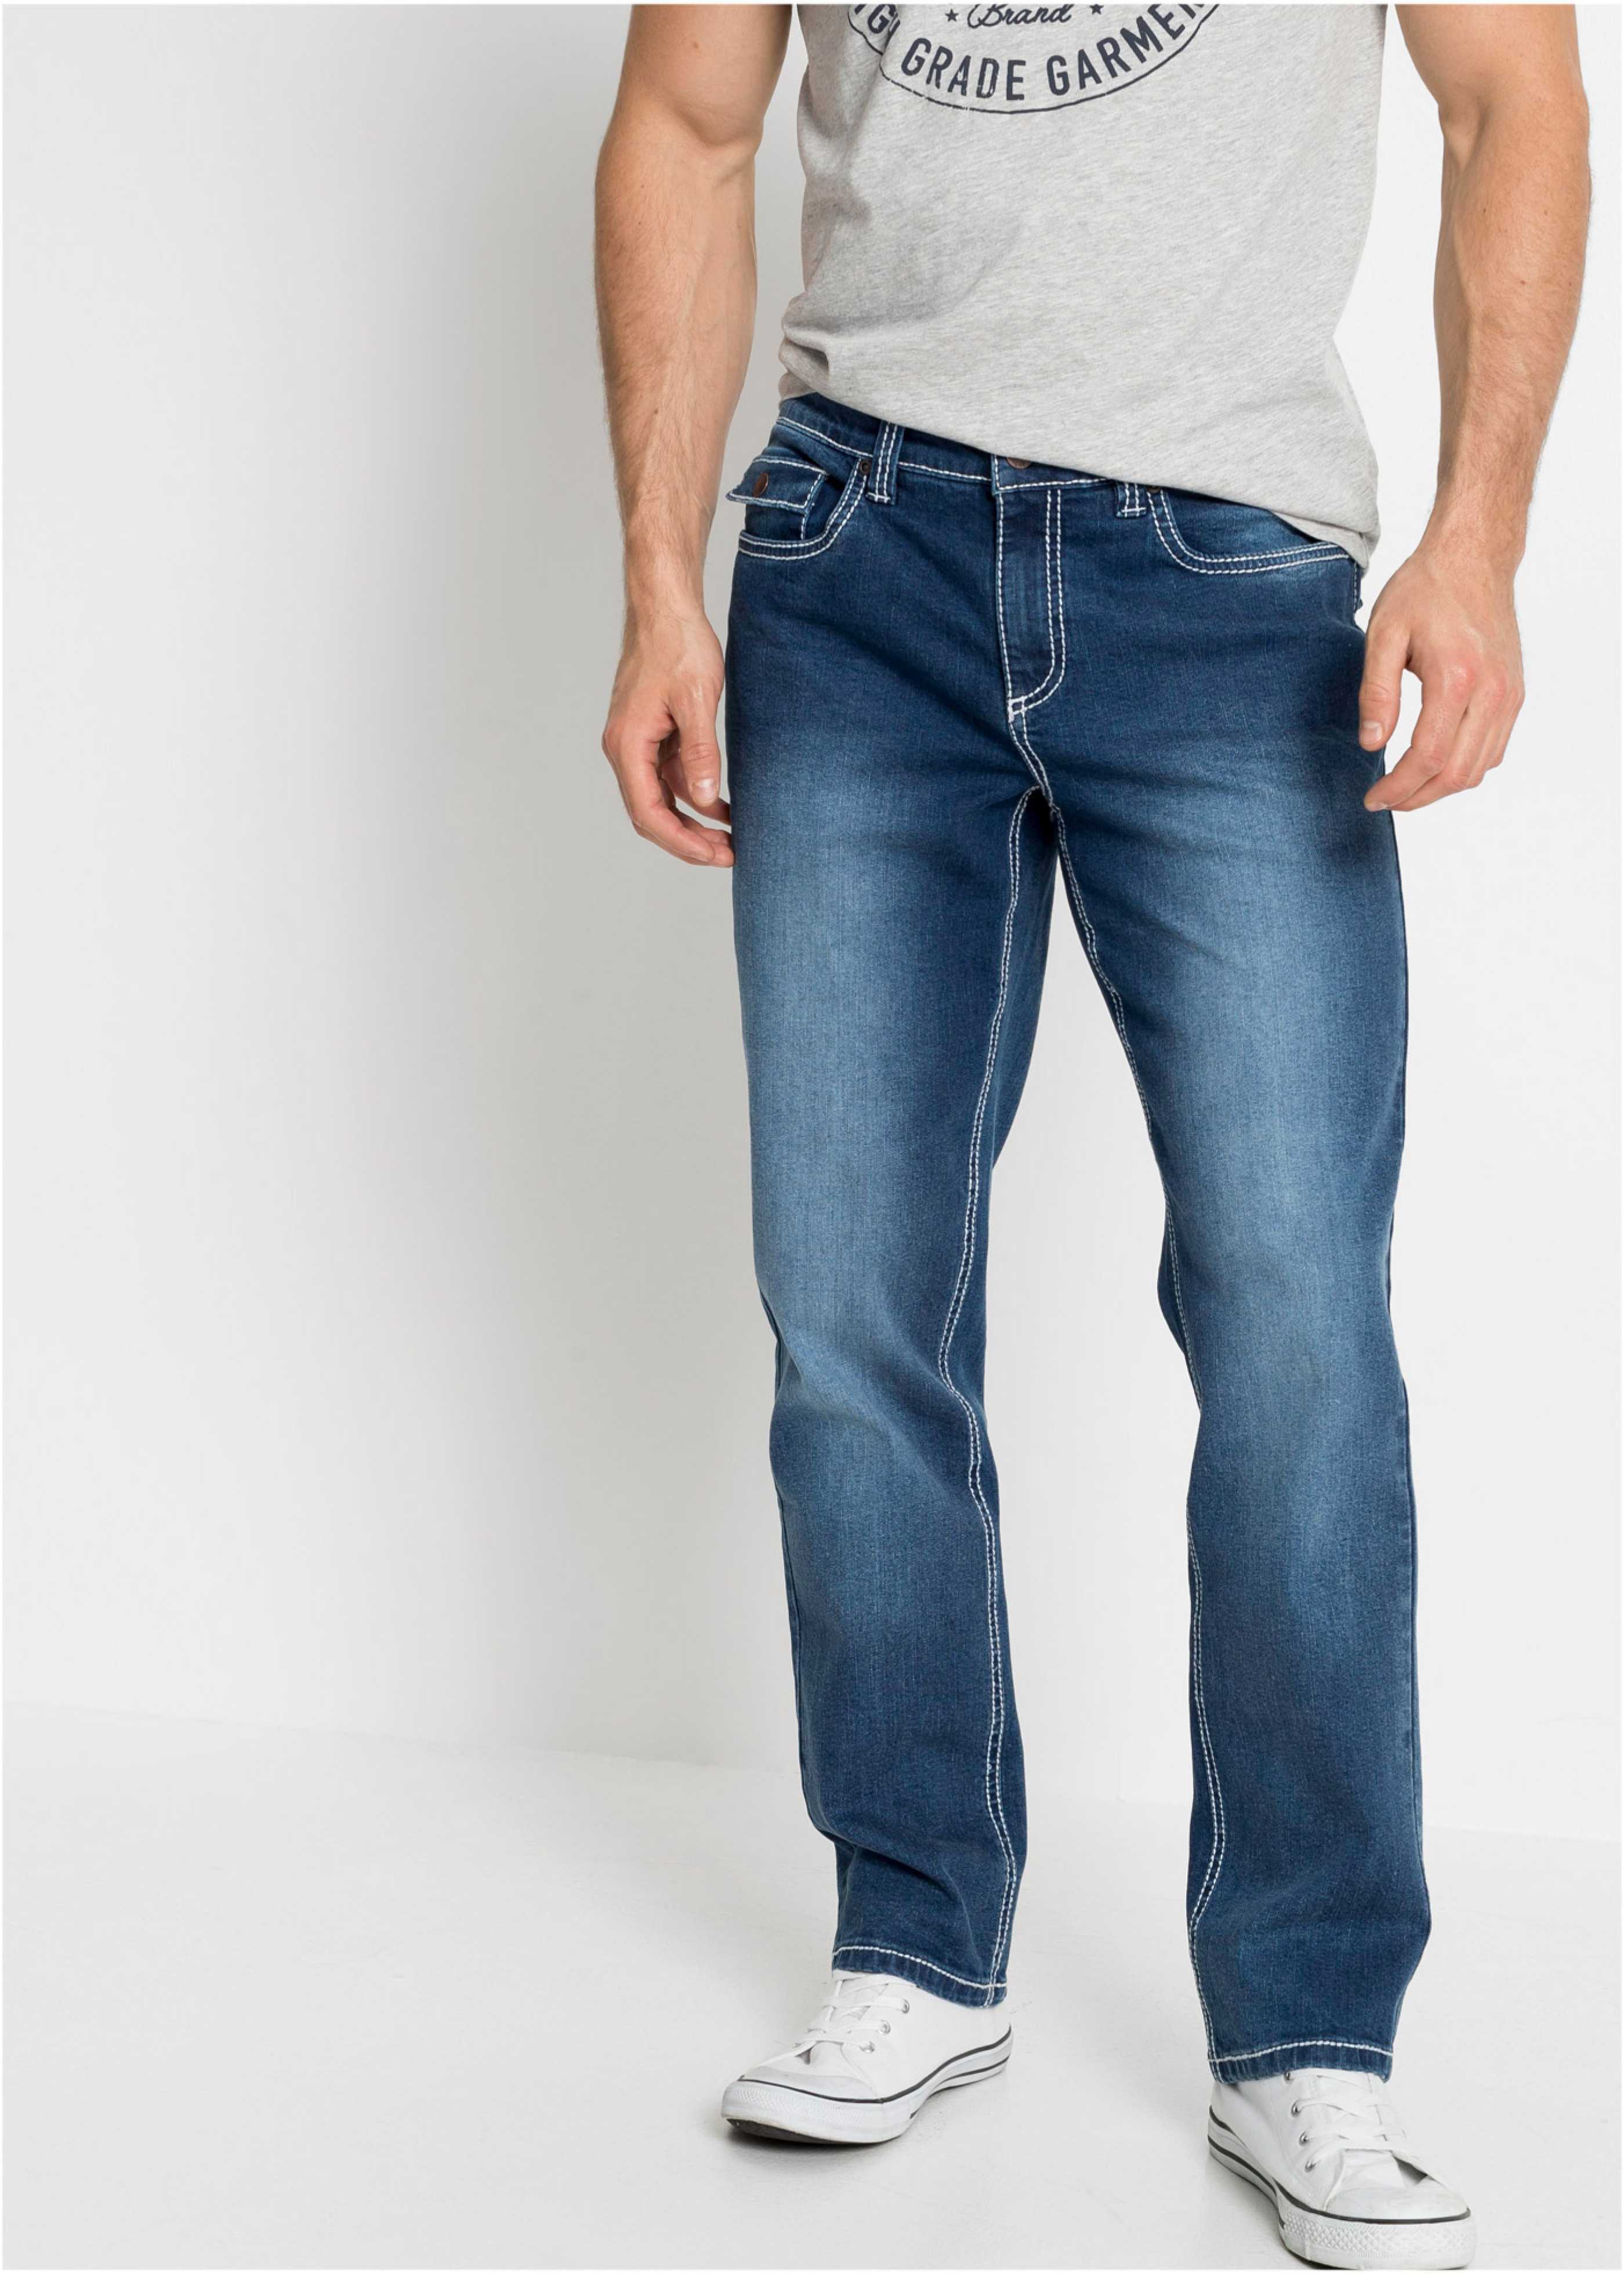 Gesäßtasche mit Reißverschluss blau Herren Komfort-Stretch Jeans 52 Gr Neu 